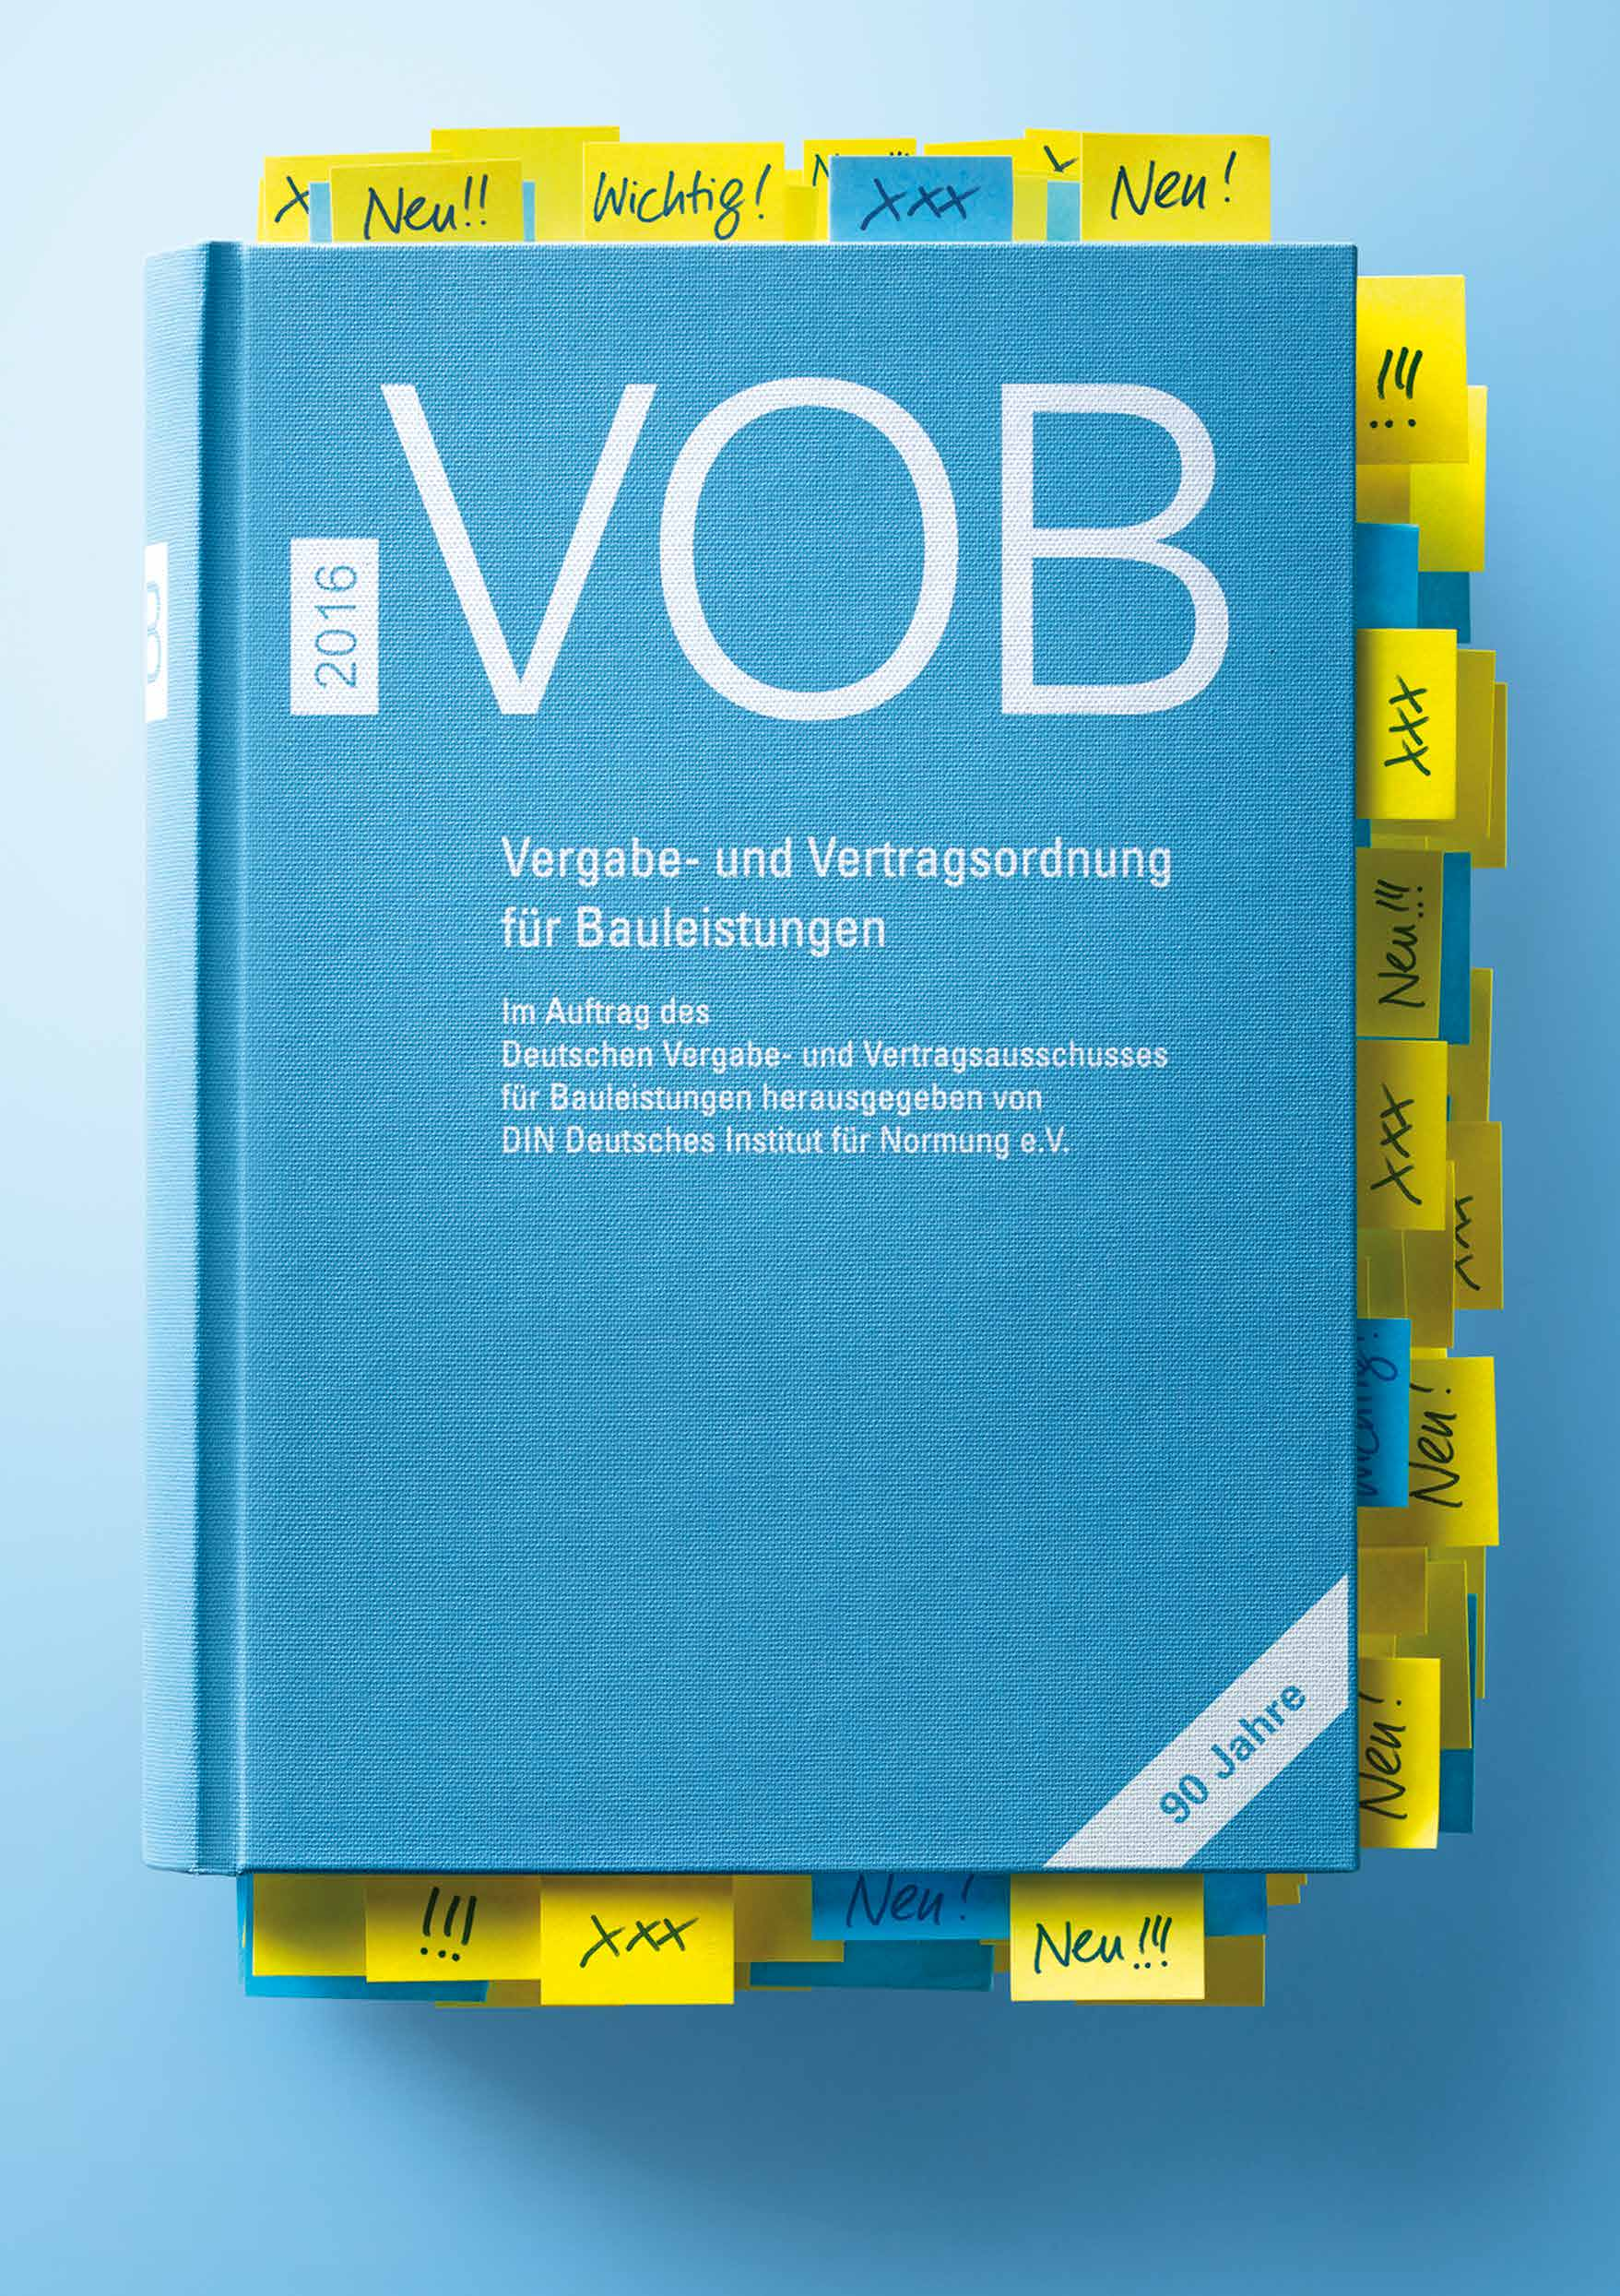 publishing DIN Rund um die VOB 2016